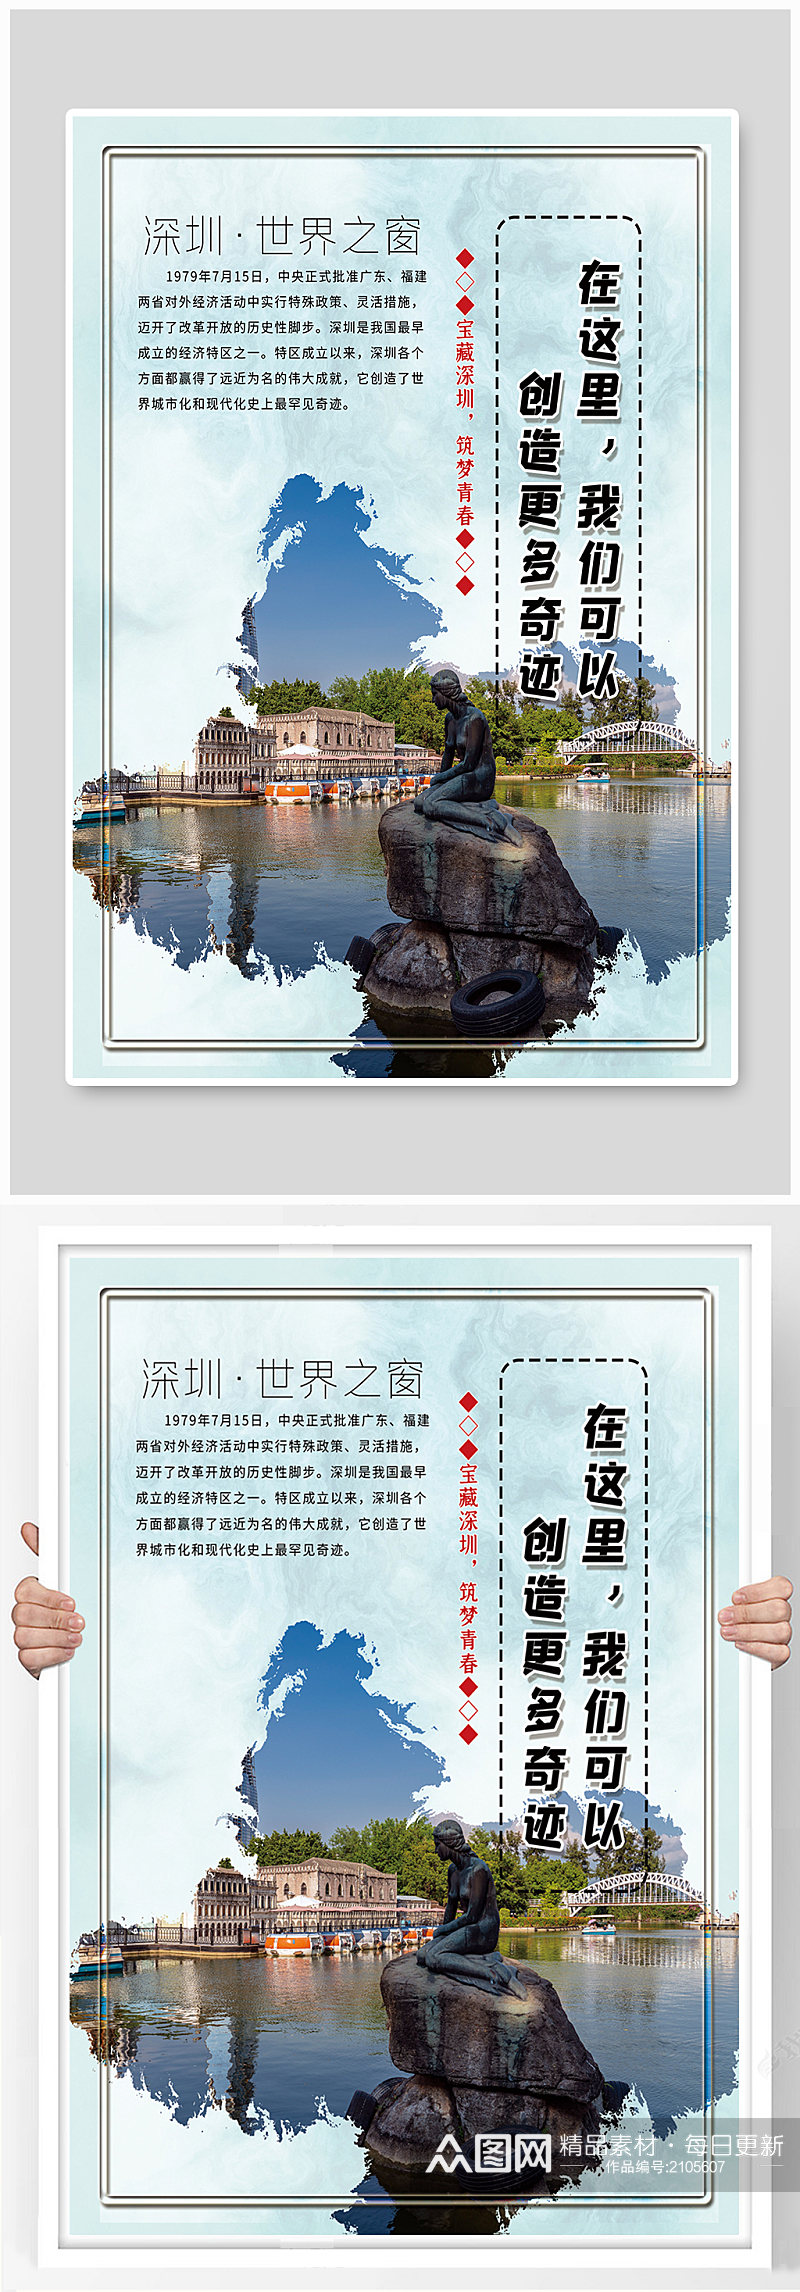 简约深圳城市宣传系列海报素材